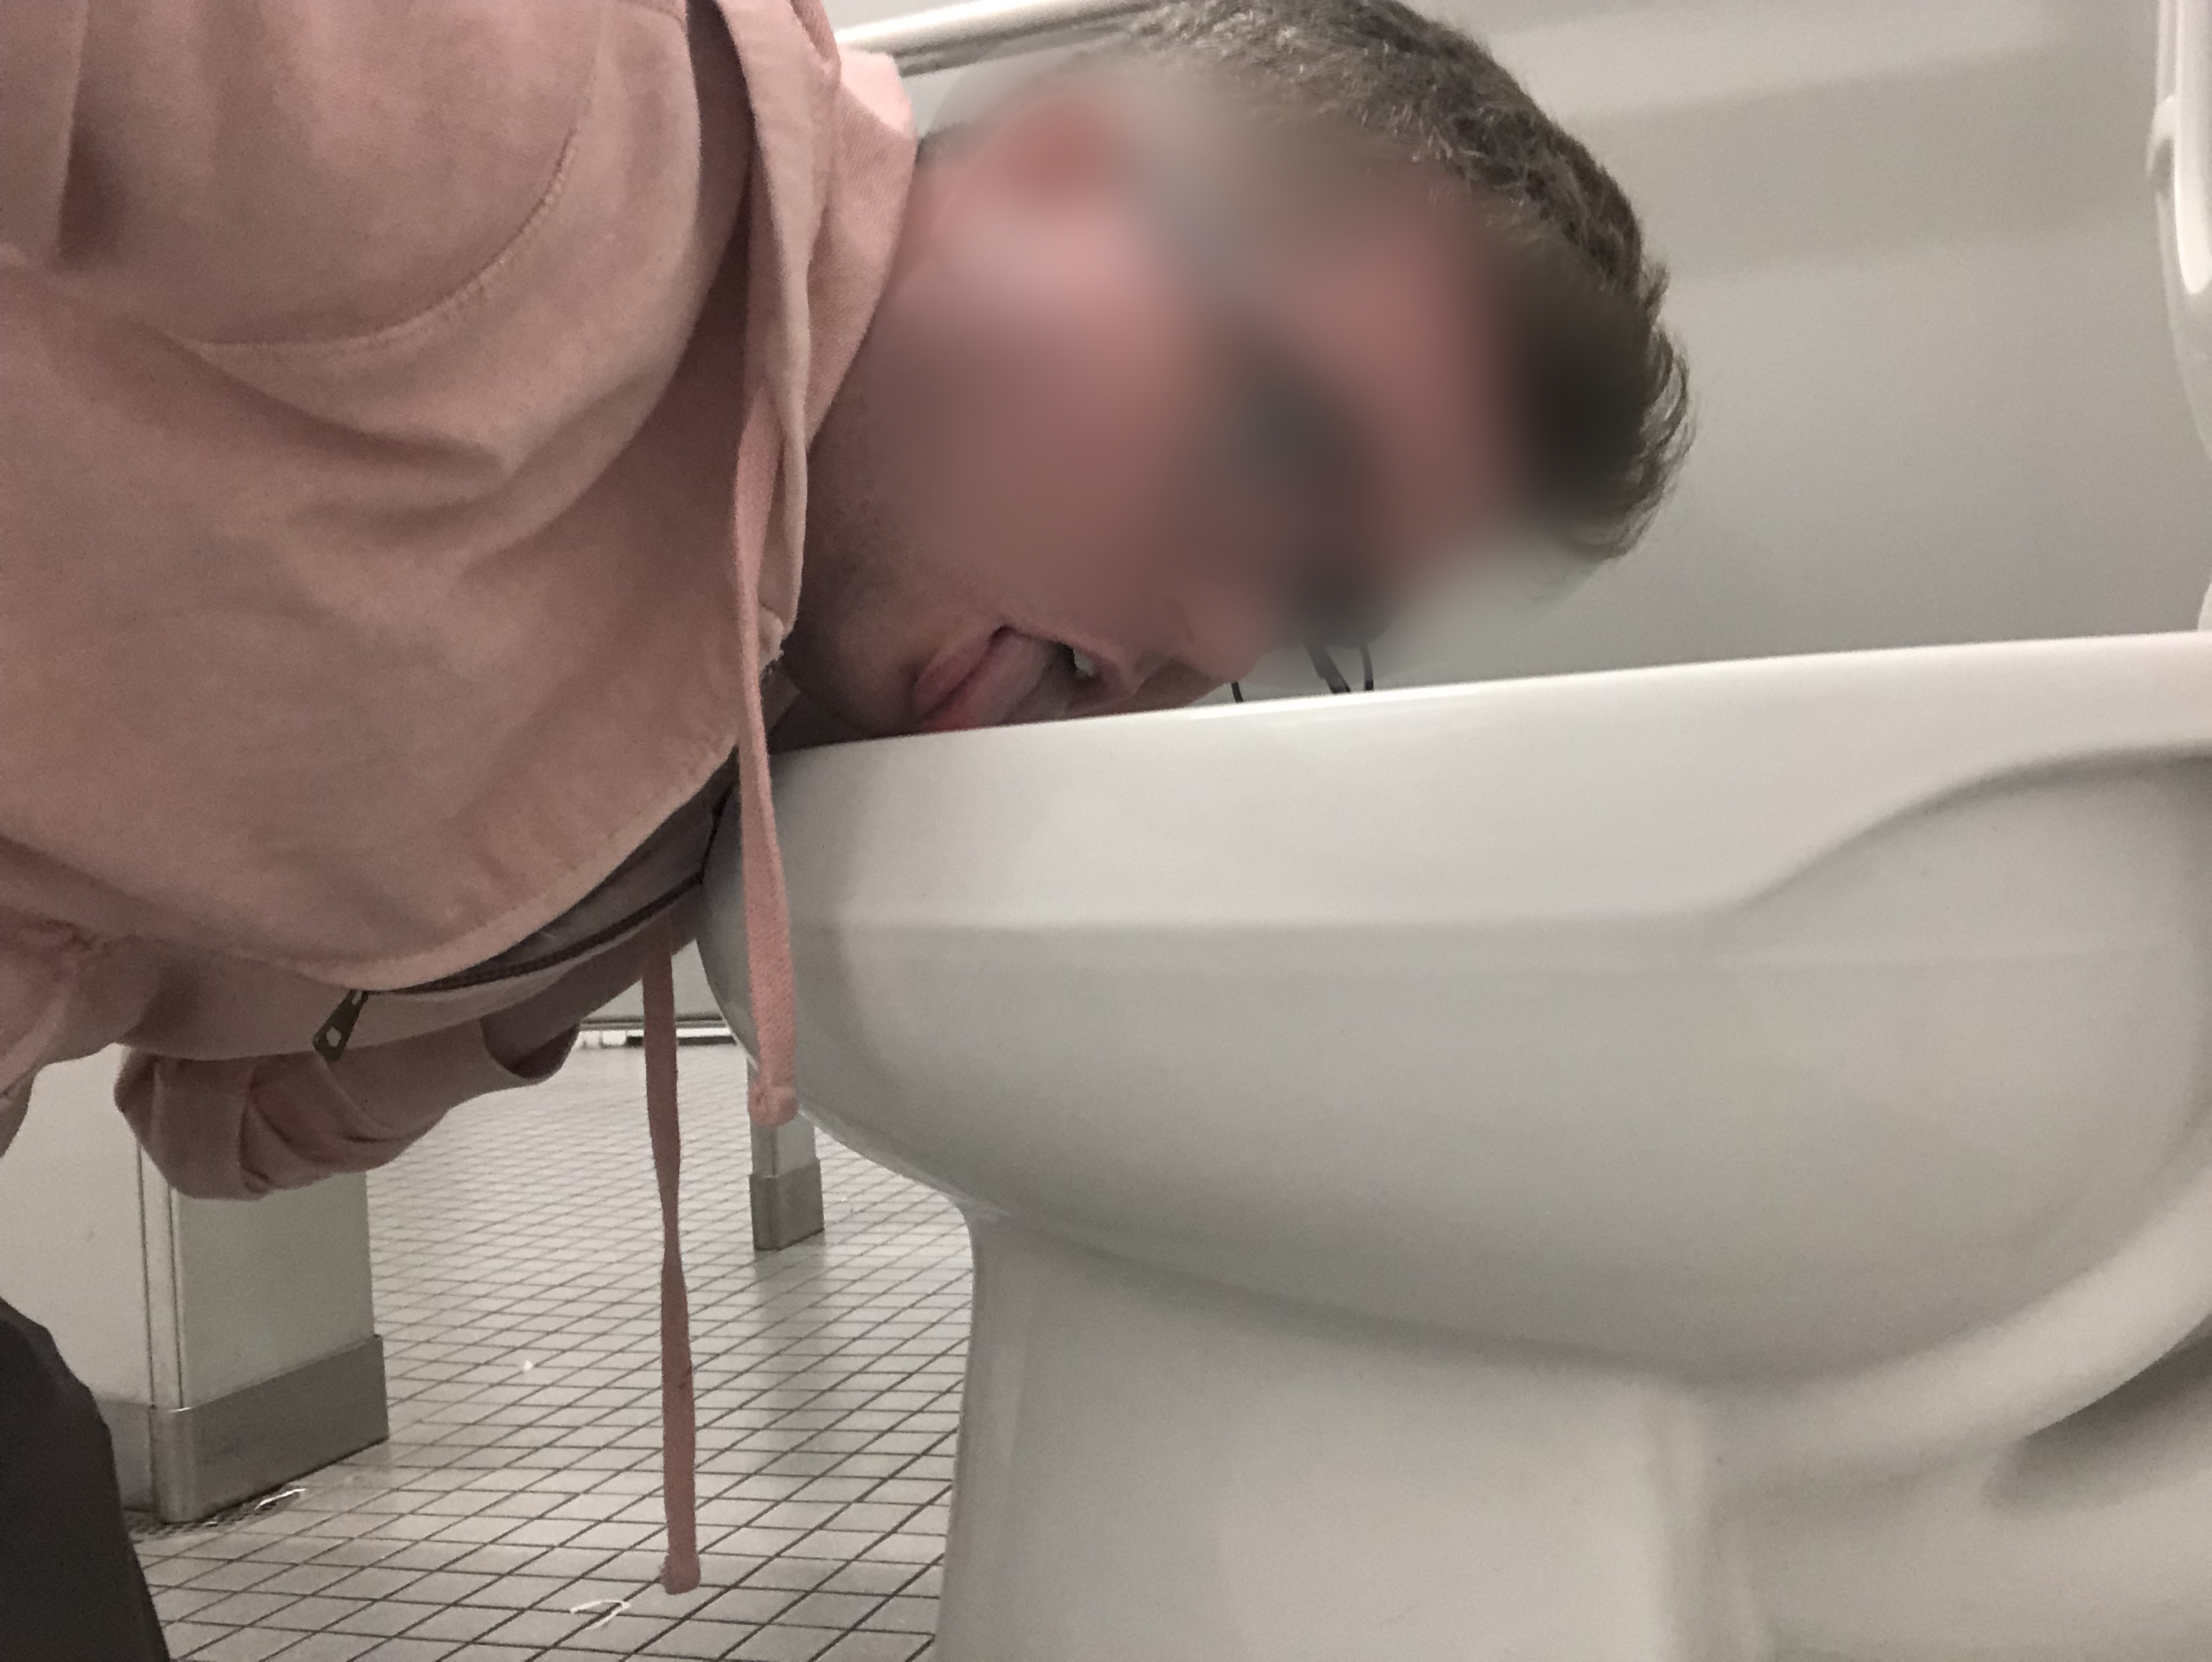 Fag licks a public urinal & toilet clean (again)